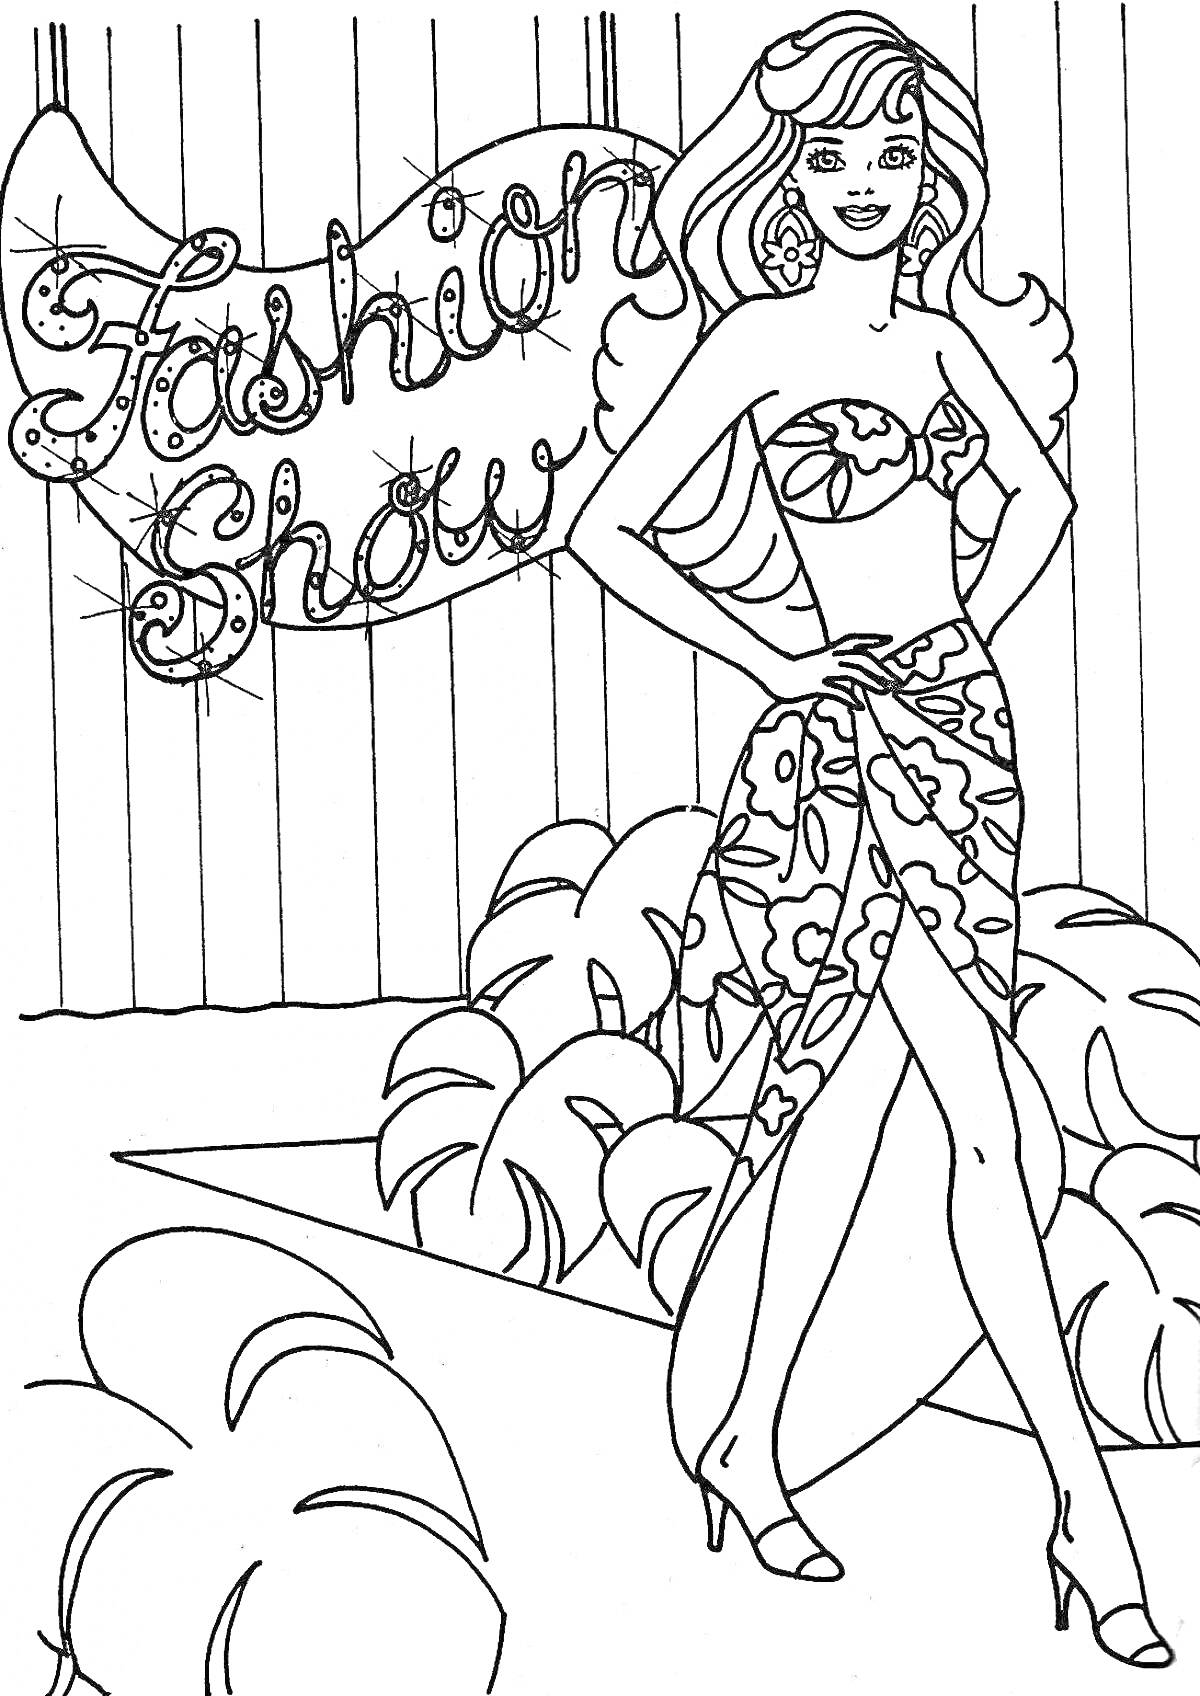 Раскраска Модель Барби на показе мод в 90-х с надписью «Fashion Show» на заднем фоне, в купальнике с юбкой и на каблуках, на фоне растений